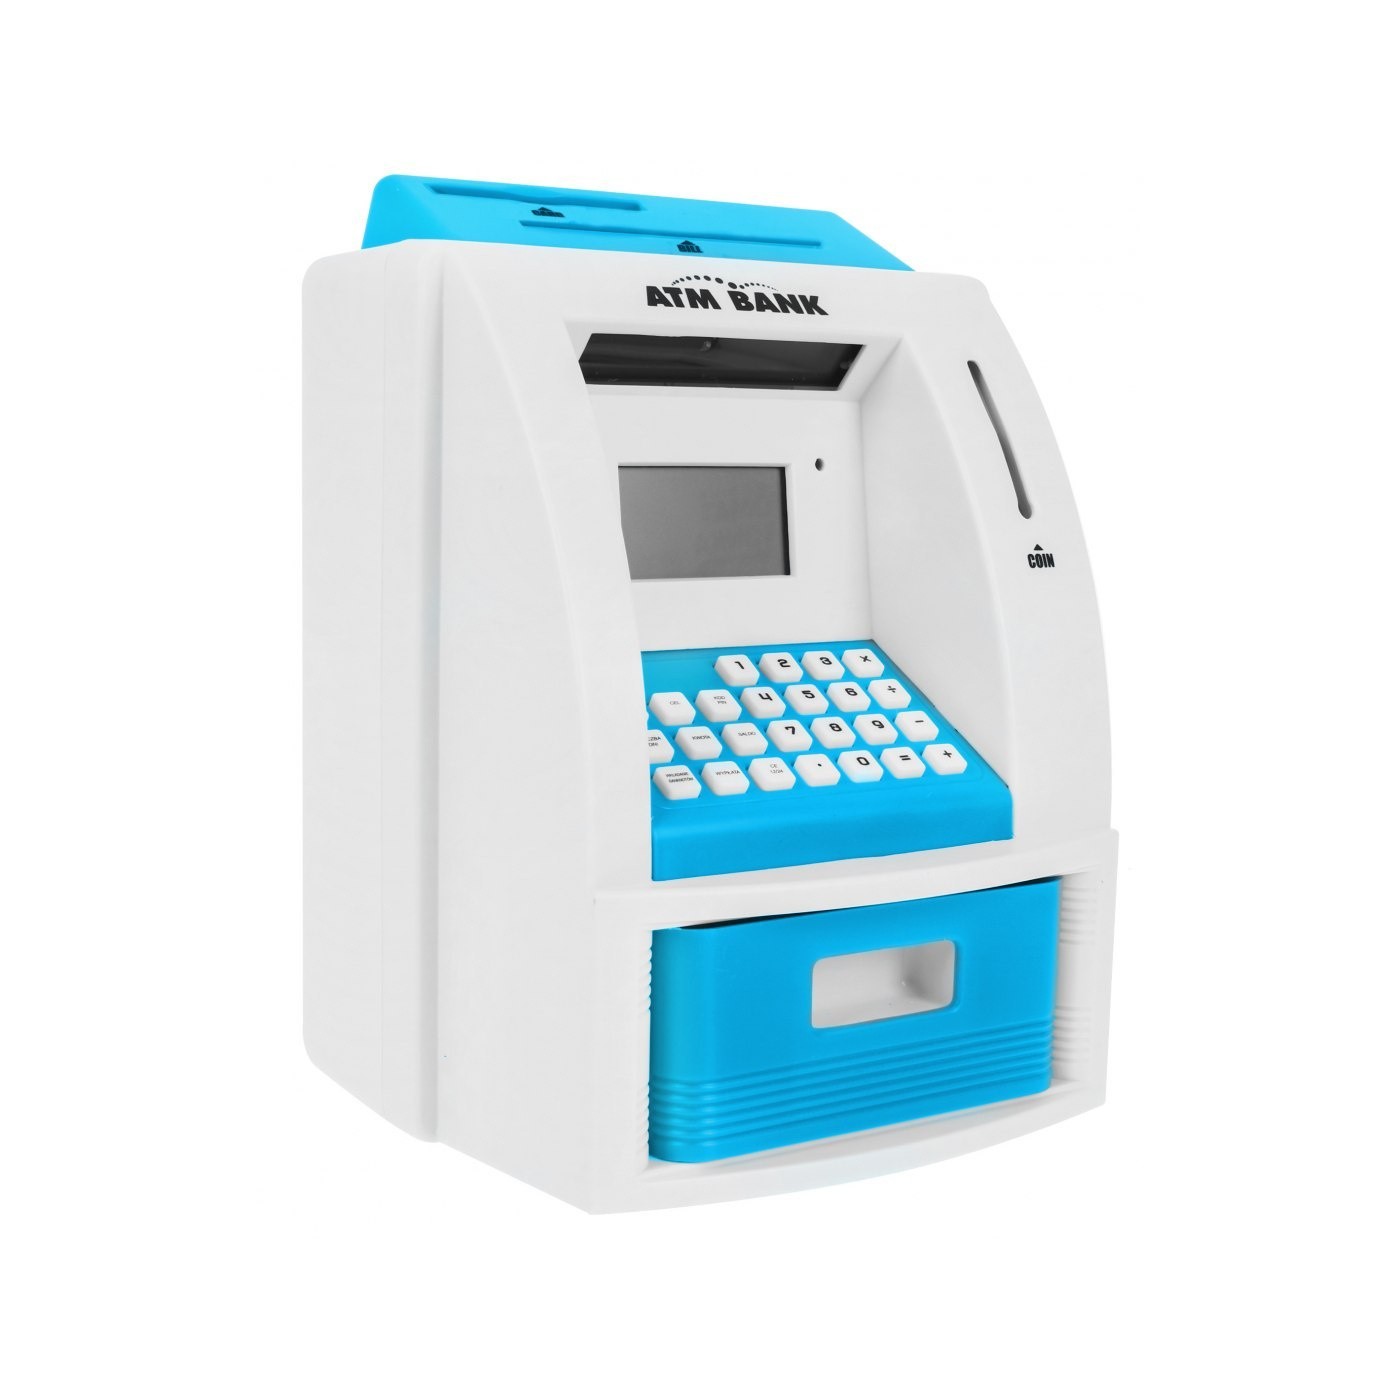 Bankomat skarbonka dla dzieci 3+ niebieski Interaktywne funkcje + Karta bankomatowa